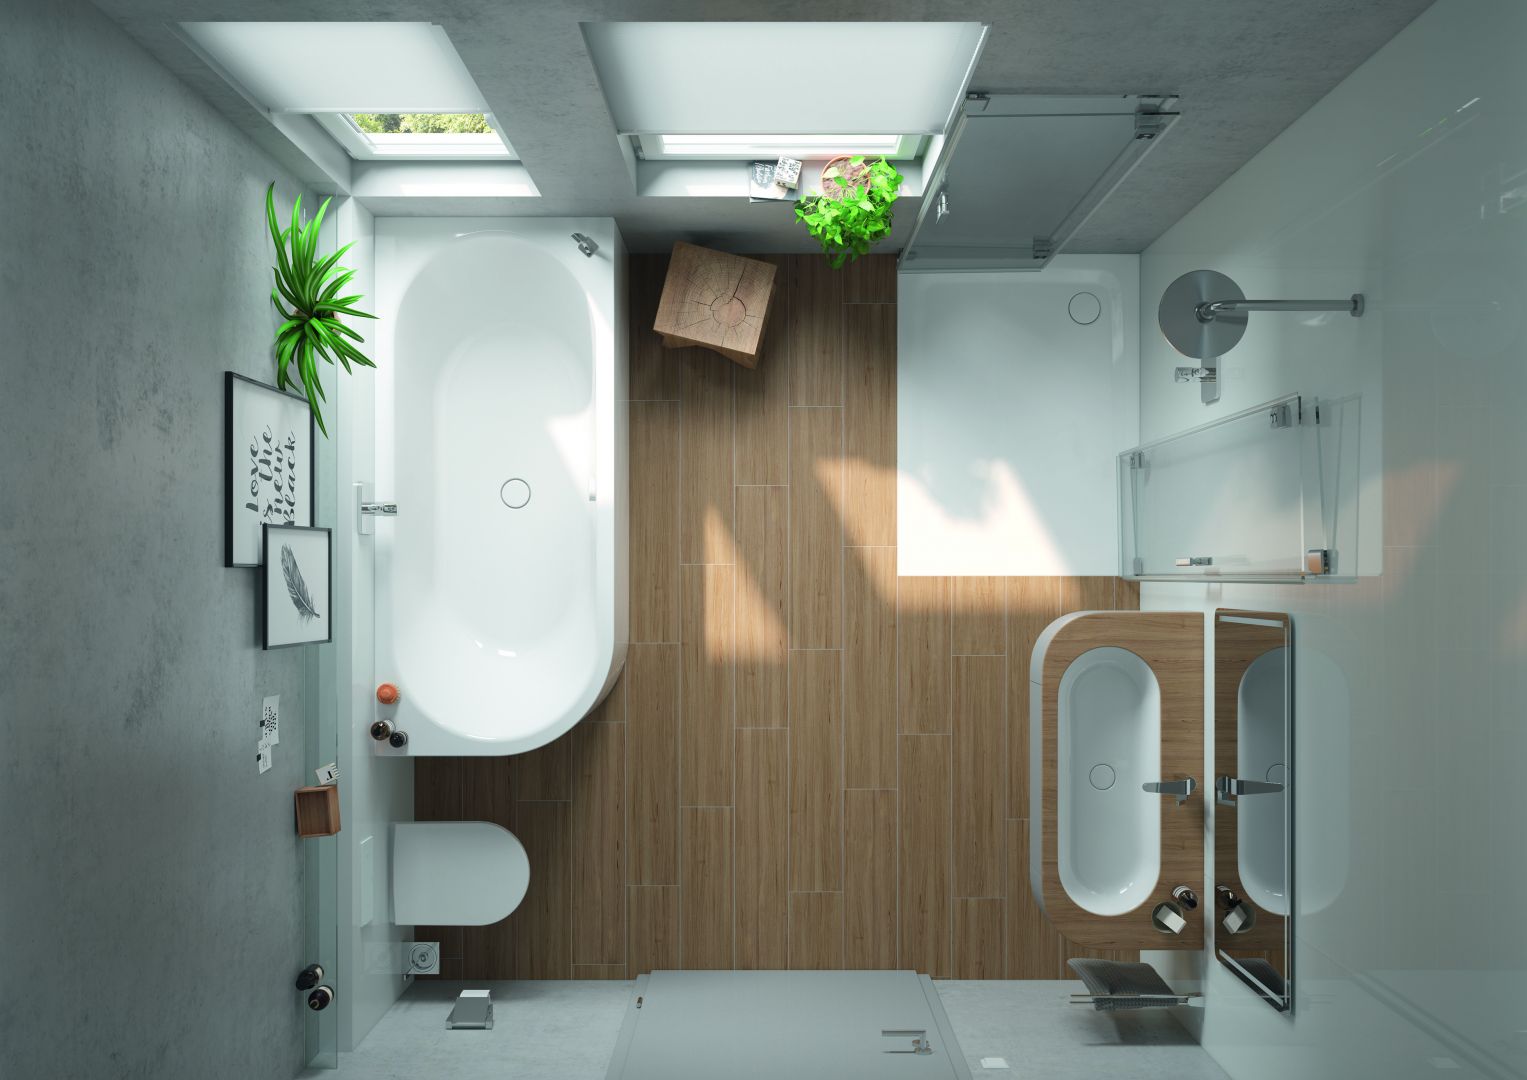 Narożna kabina z płaskim brodzikiem i składanymi w harmonijkę drzwiami świetnie się sprawdza w małych łazienkach. Fot. Kaldewei